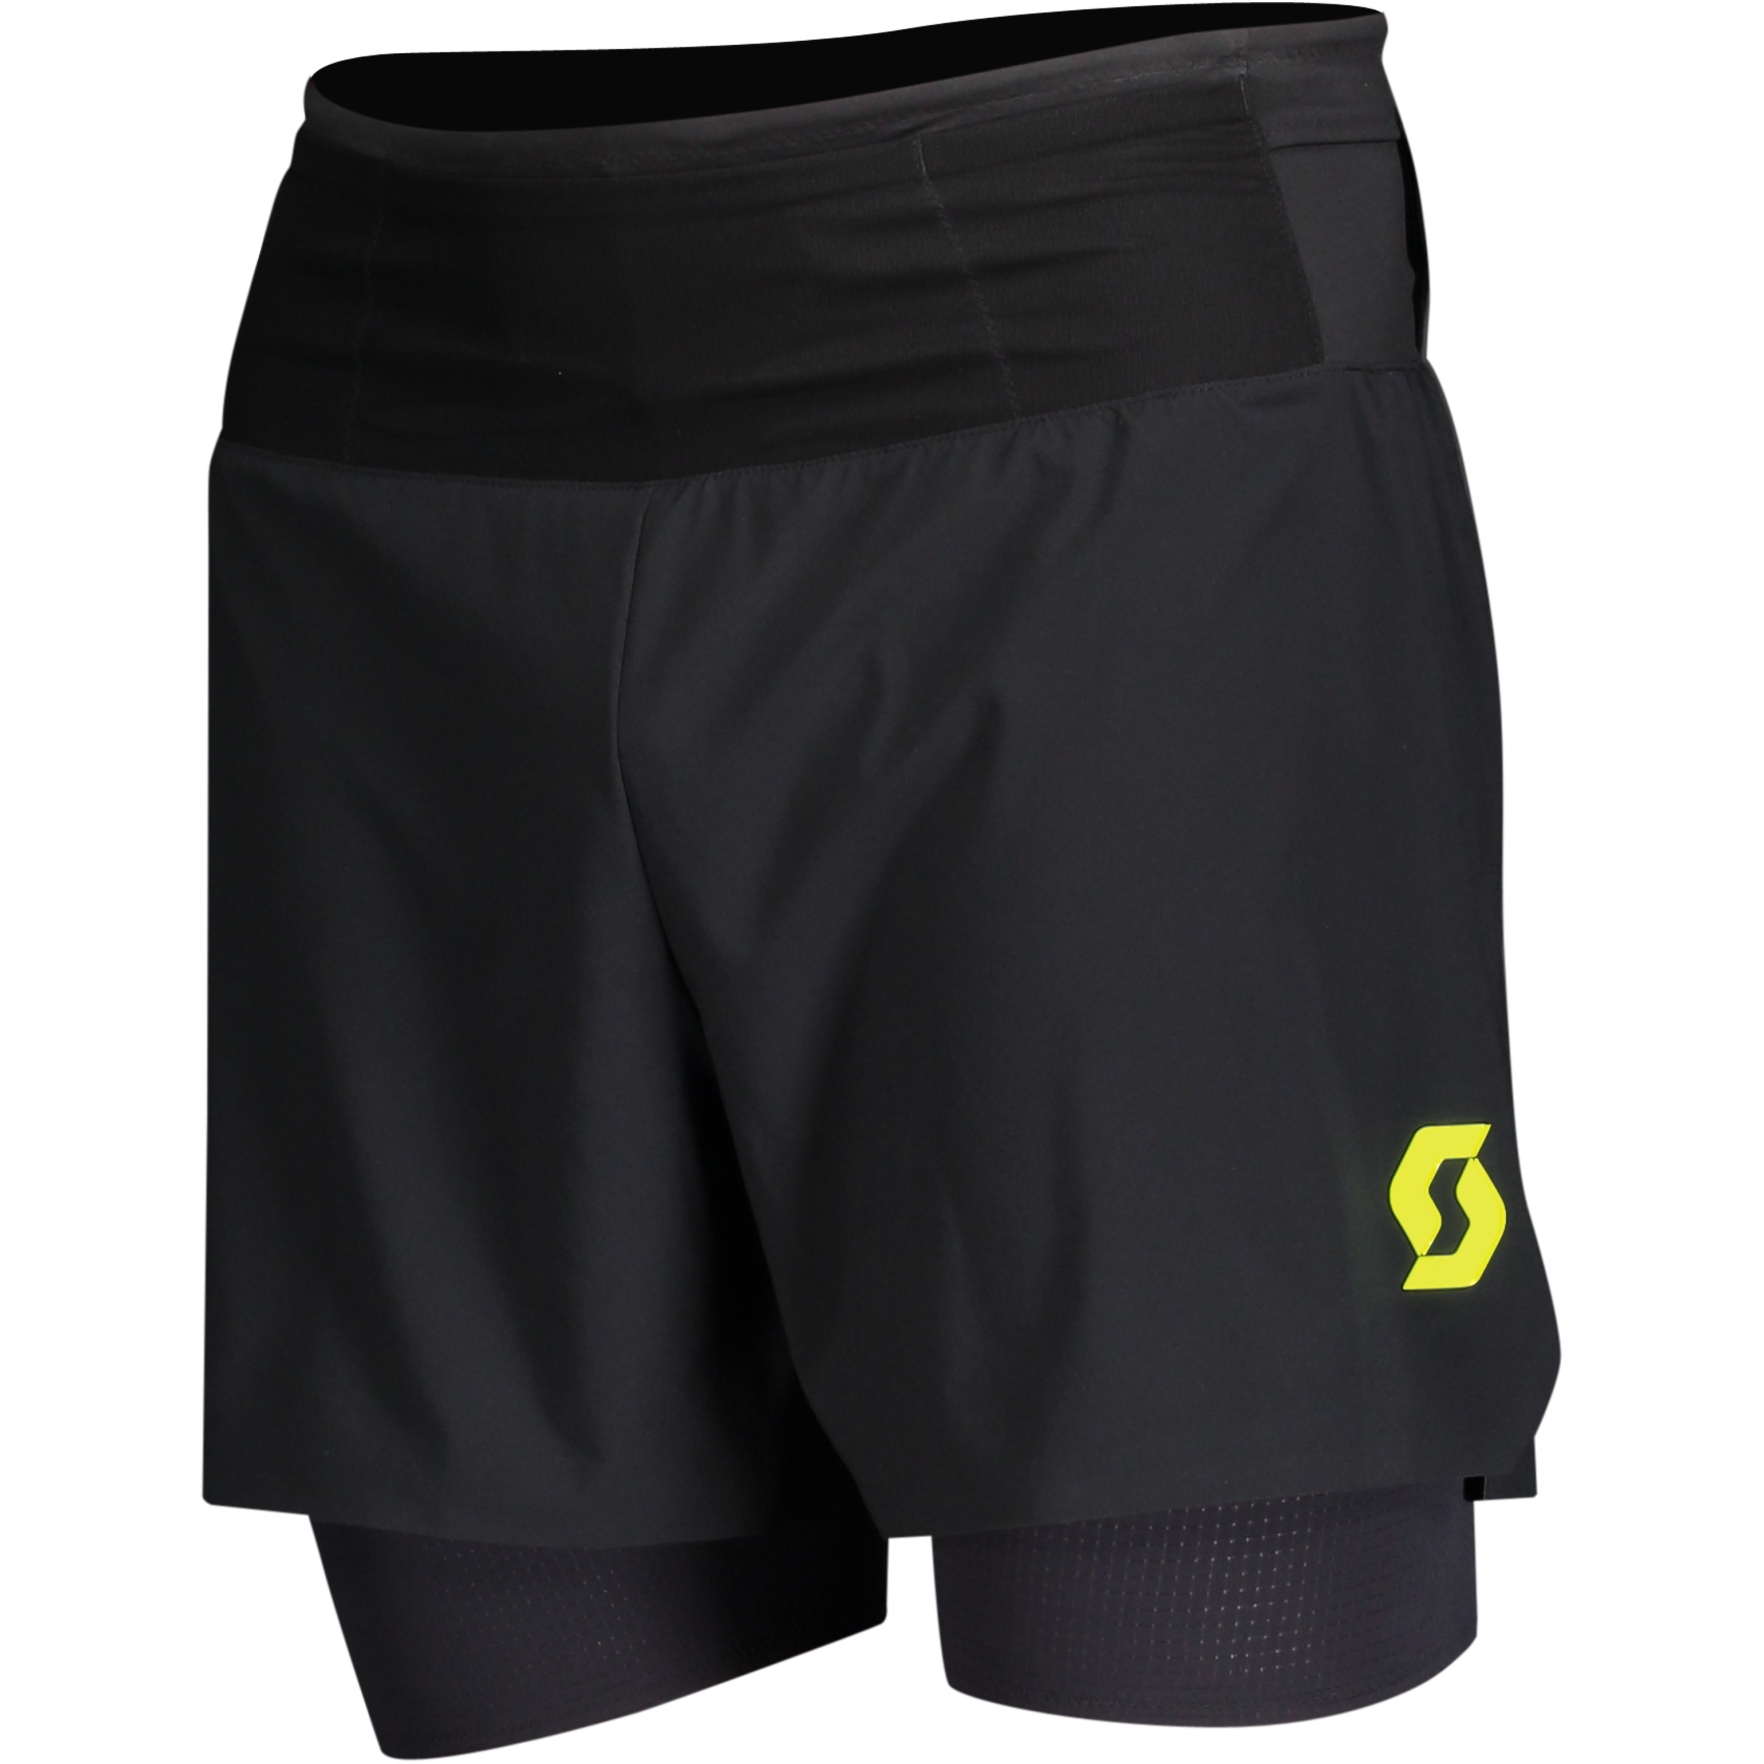 Bild von SCOTT RC Run Hybrid Shorts Laufhose kurz - schwarz/gelb